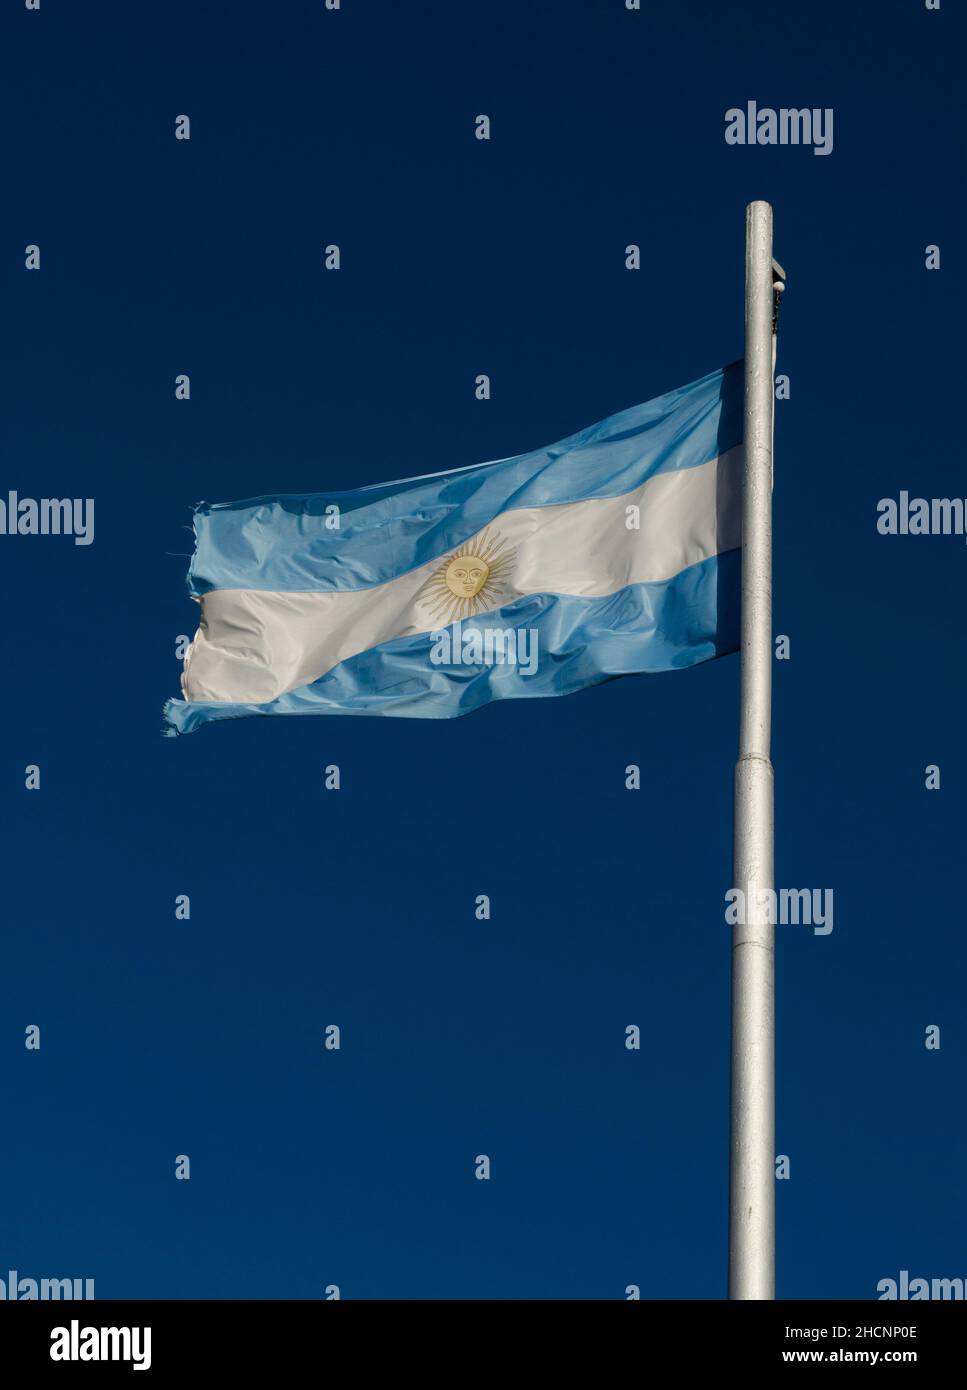 Flagge der Argentinischen Republik flattert im Wind auf ihrem Mast. Symbol des Patriotismus und Zugehörigkeit zum argentinischen Land Stockfoto